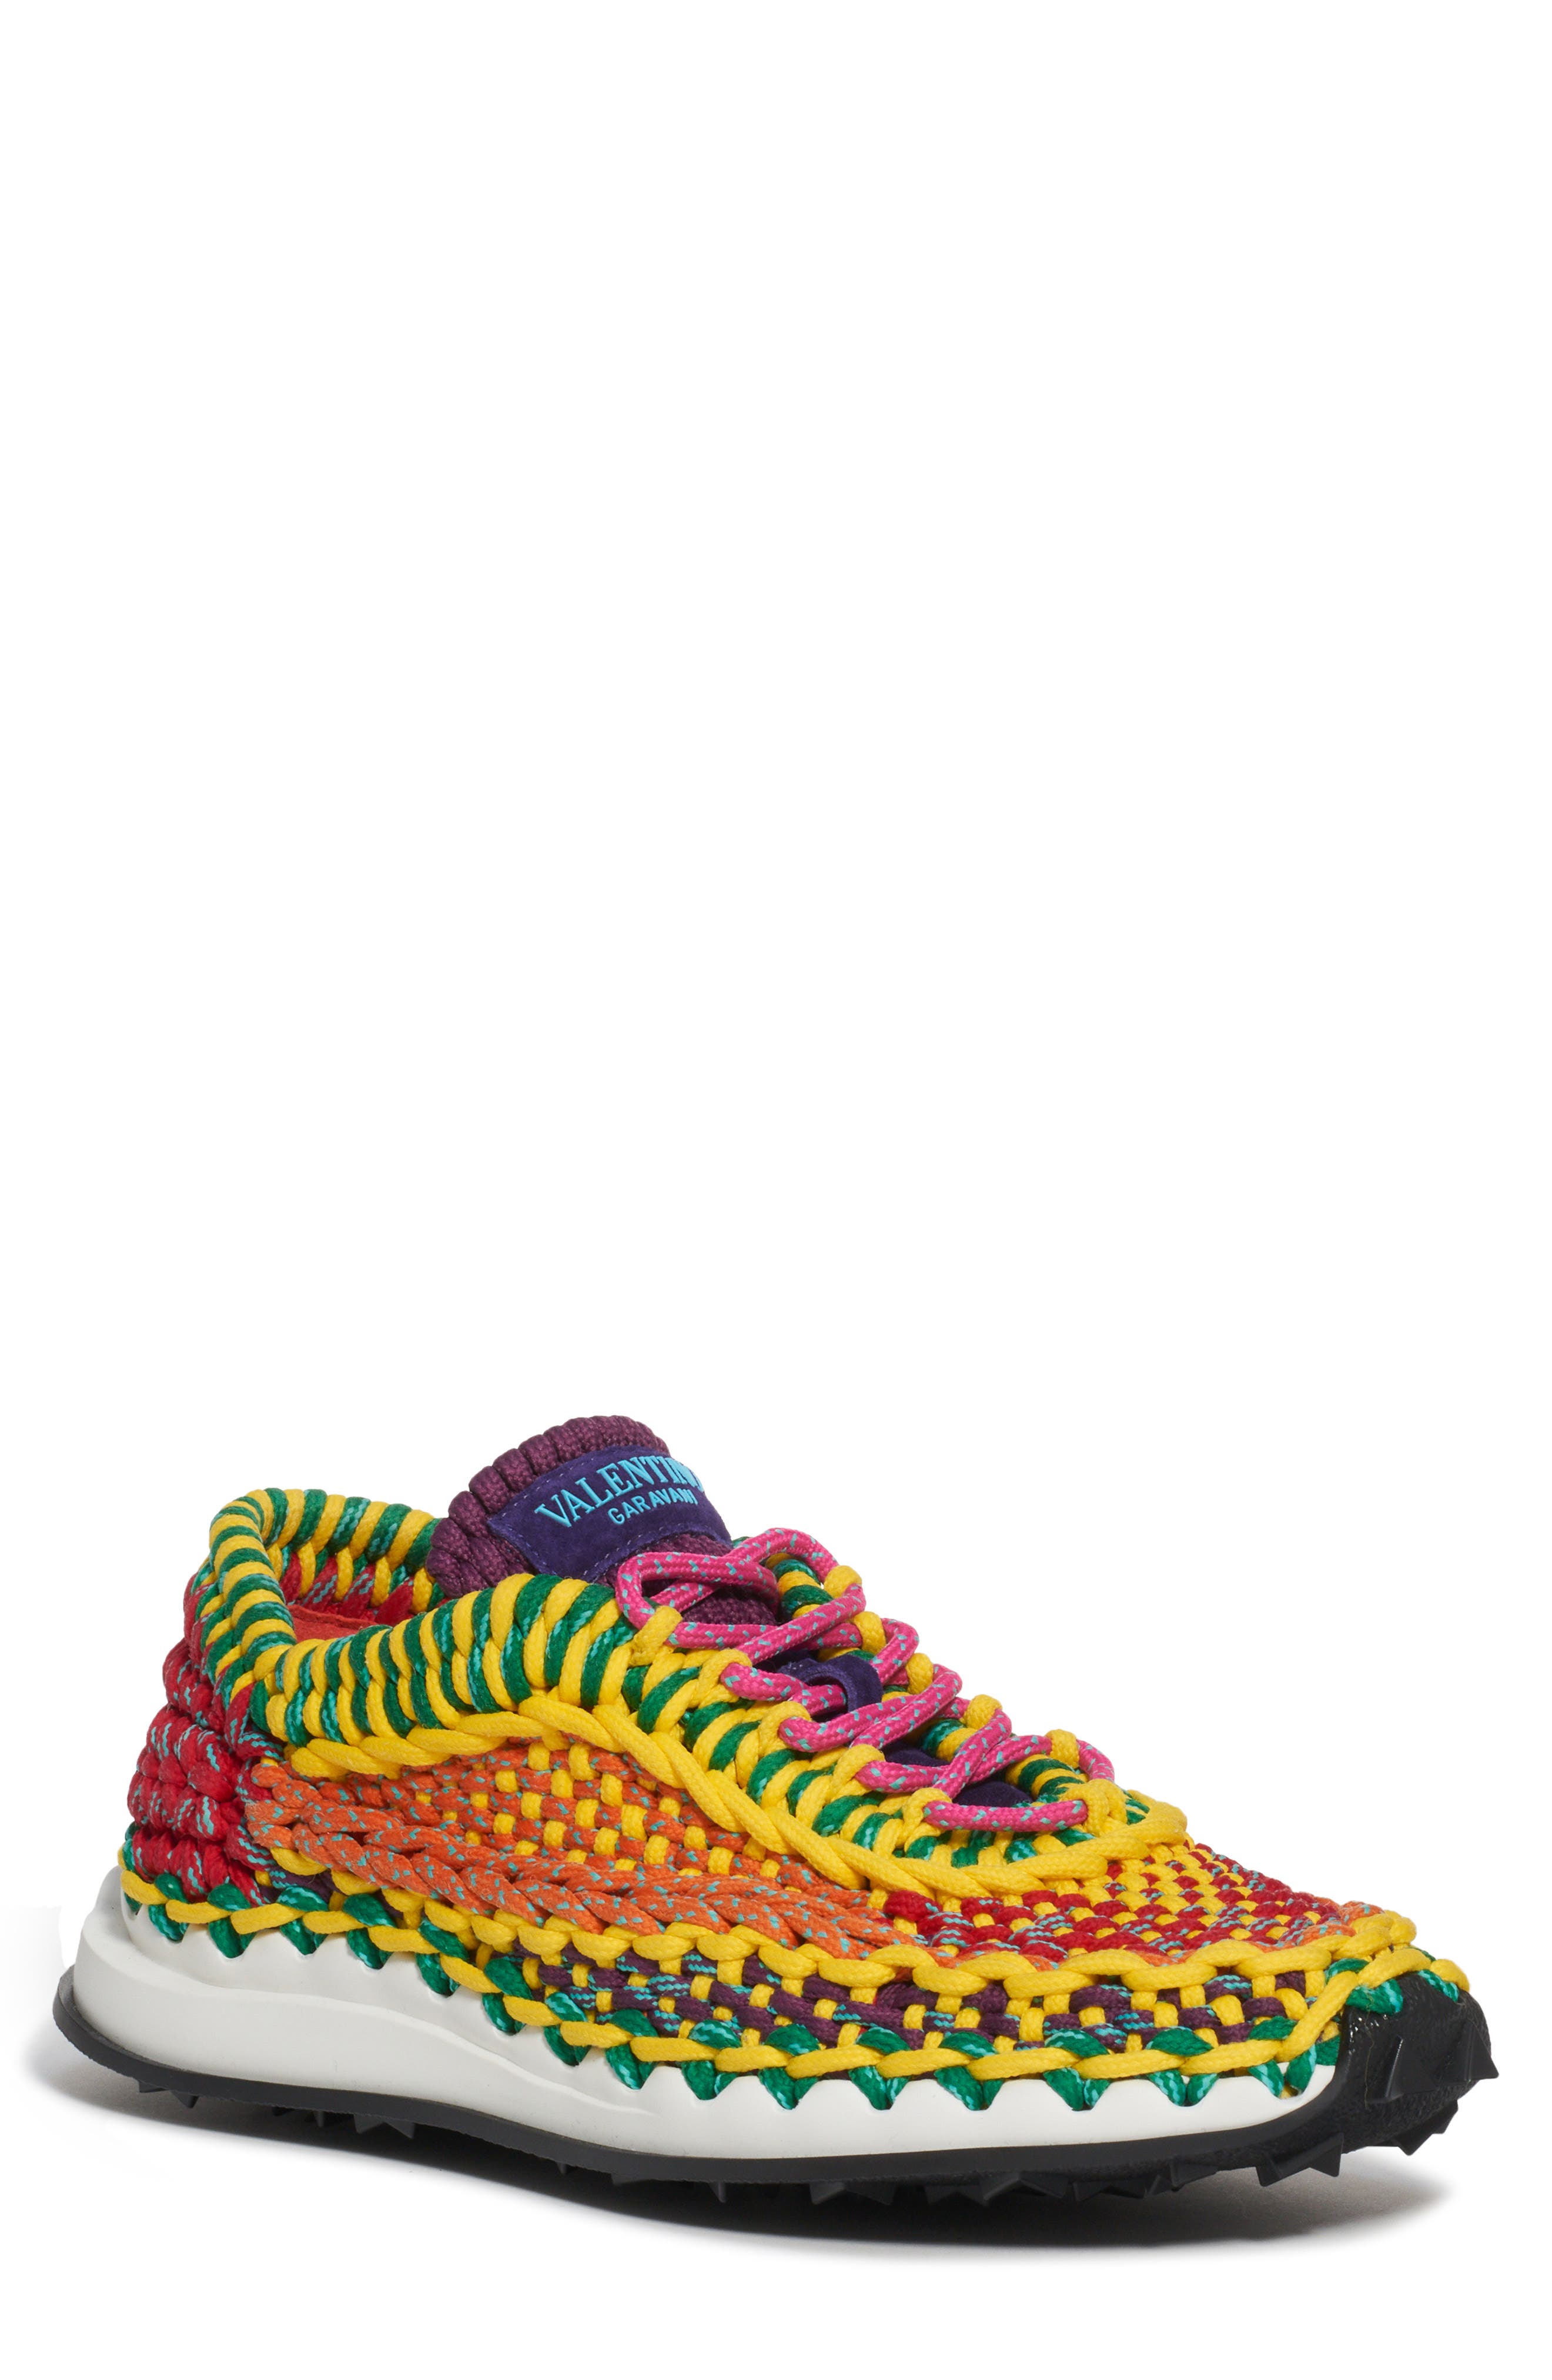 Valentino Garavani Crochet Low Top Sneaker